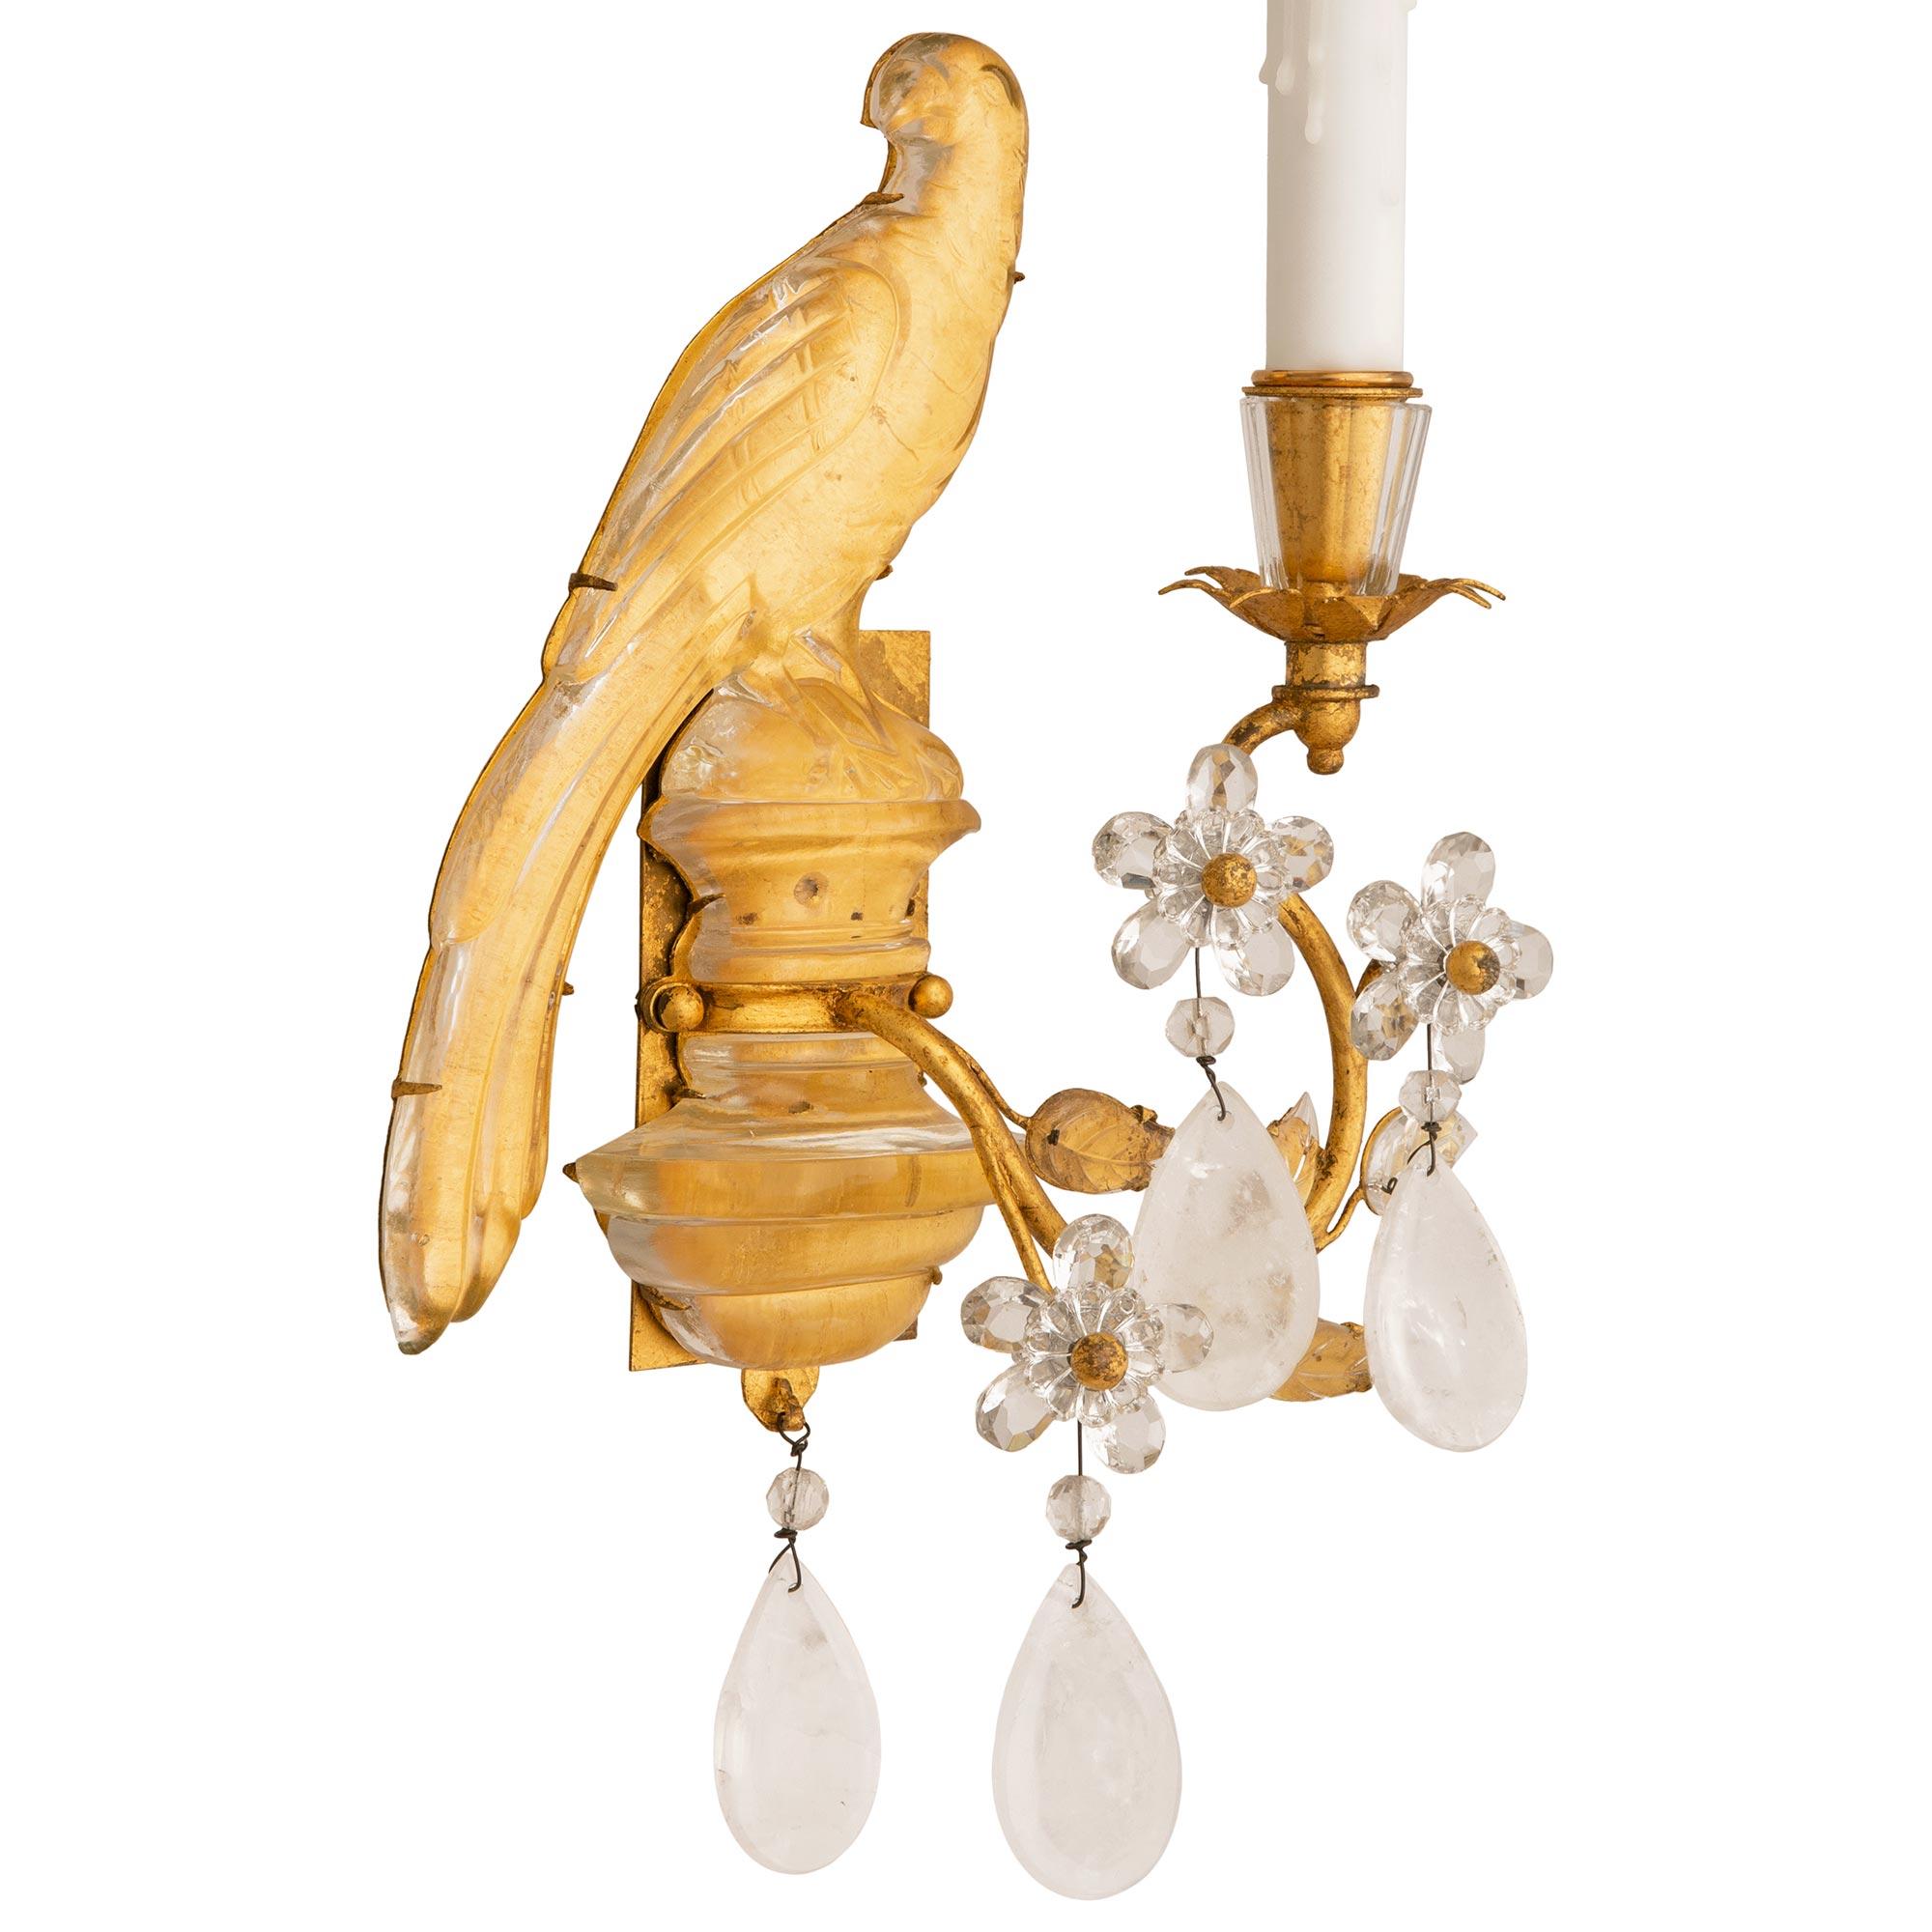 Magnifique paire d'appliques en cristal de roche et métal doré de style Louis XVI, attribuée à la Maison Baguès. Cristal de roche et métal doré, attribuée à la Maison Baguès. Chaque applique à bras unique présente un perroquet perché en cristal de